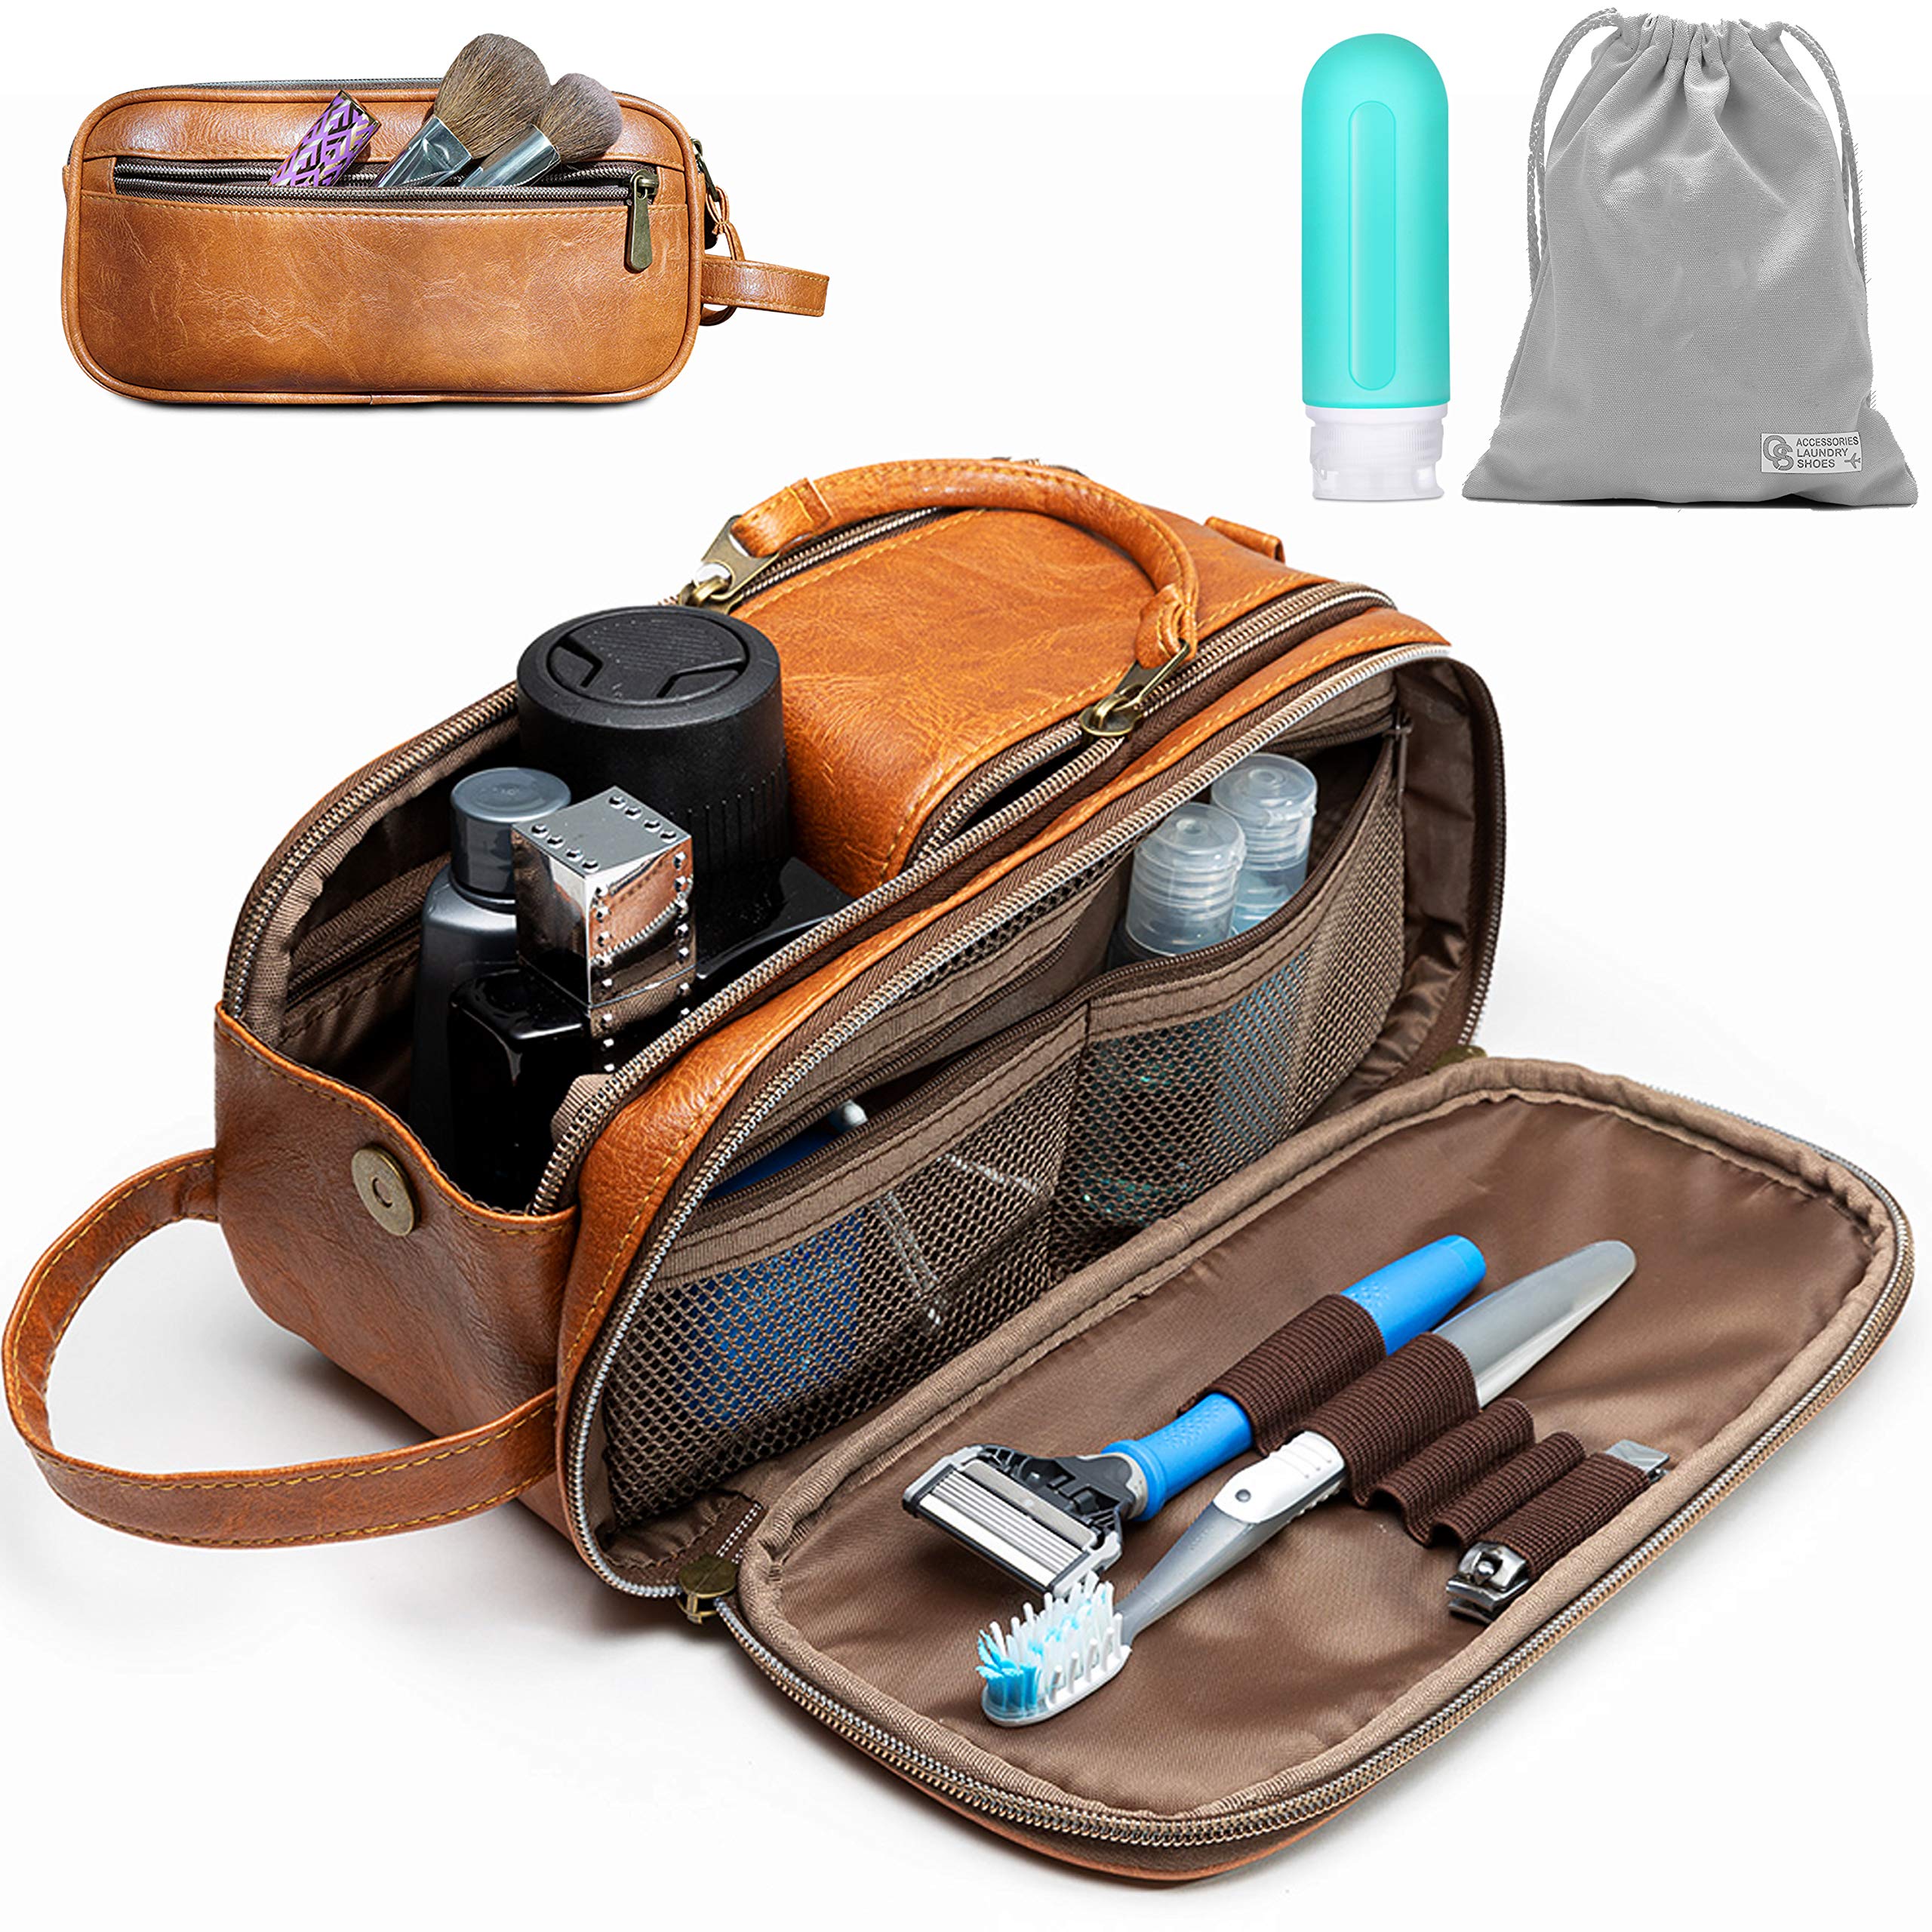 Toiletry Bag for Men or Women - Dopp Kit For Travel: Stylish Organizer ...